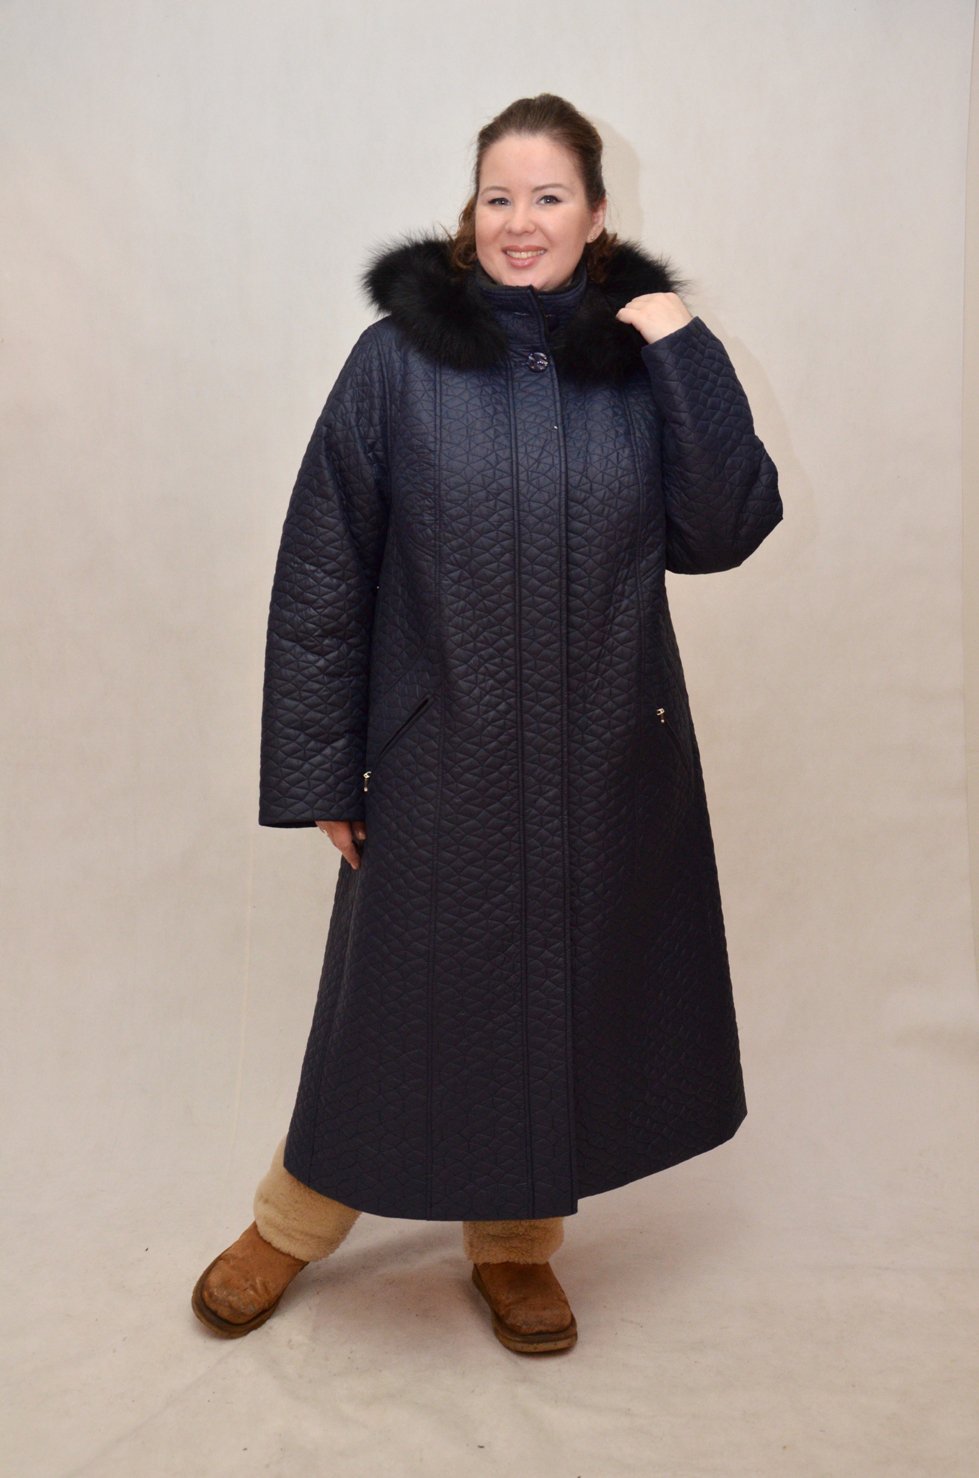 Женский зимнее пальто большого размера купить. Пальто зимнее женское больших размеров. Зимнее пальто для полных женщин. Польты для полных женщин. Женские пальто большого размера.